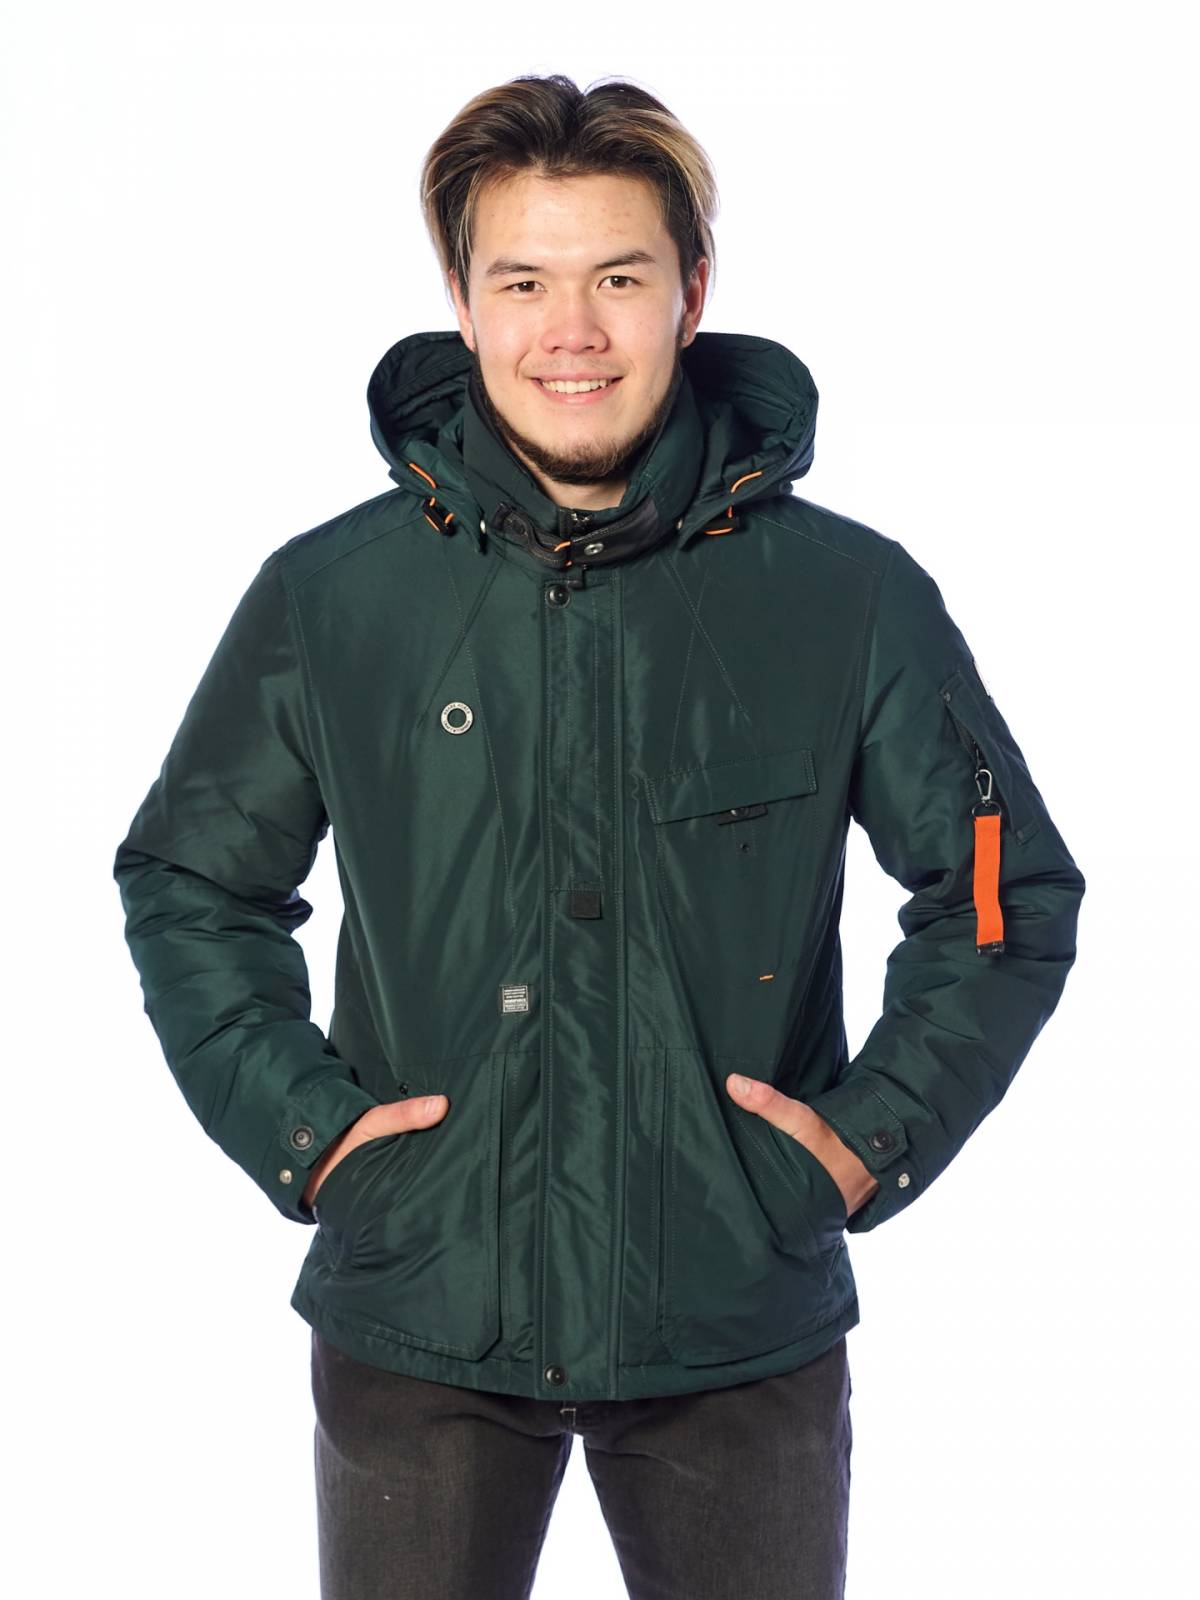 Зимняя куртка мужская Shark Force 4190 зеленая 48 RU